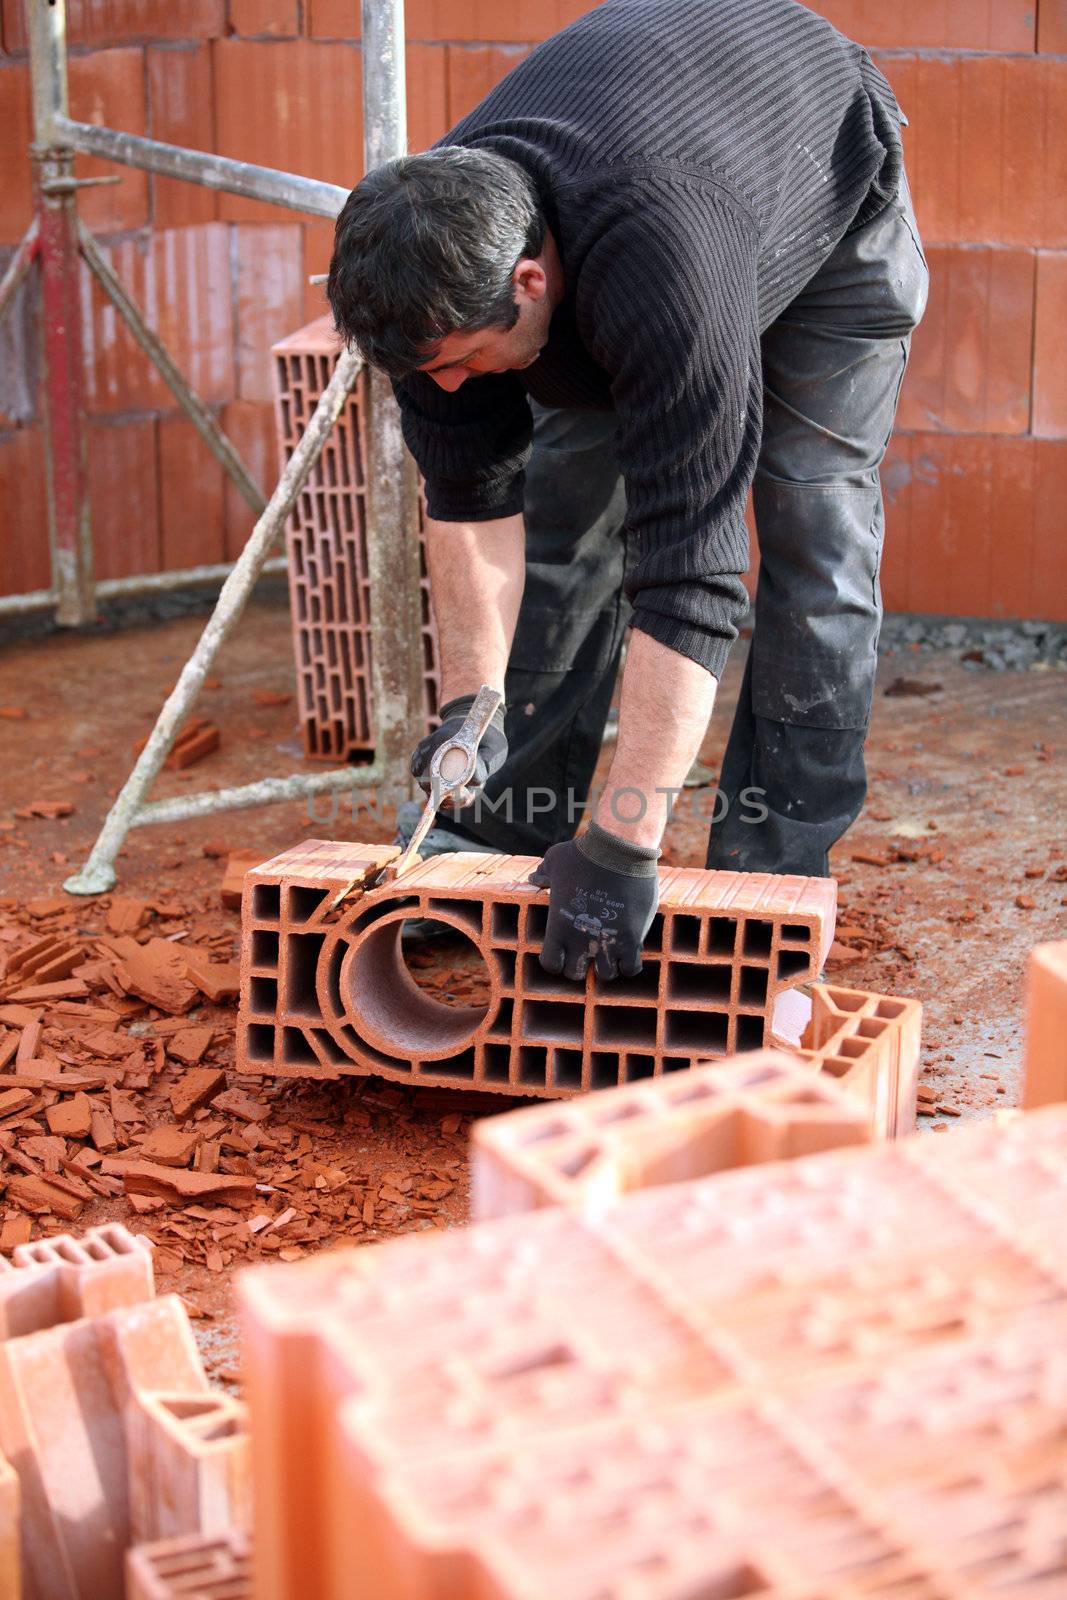 Workman sculpting a brick